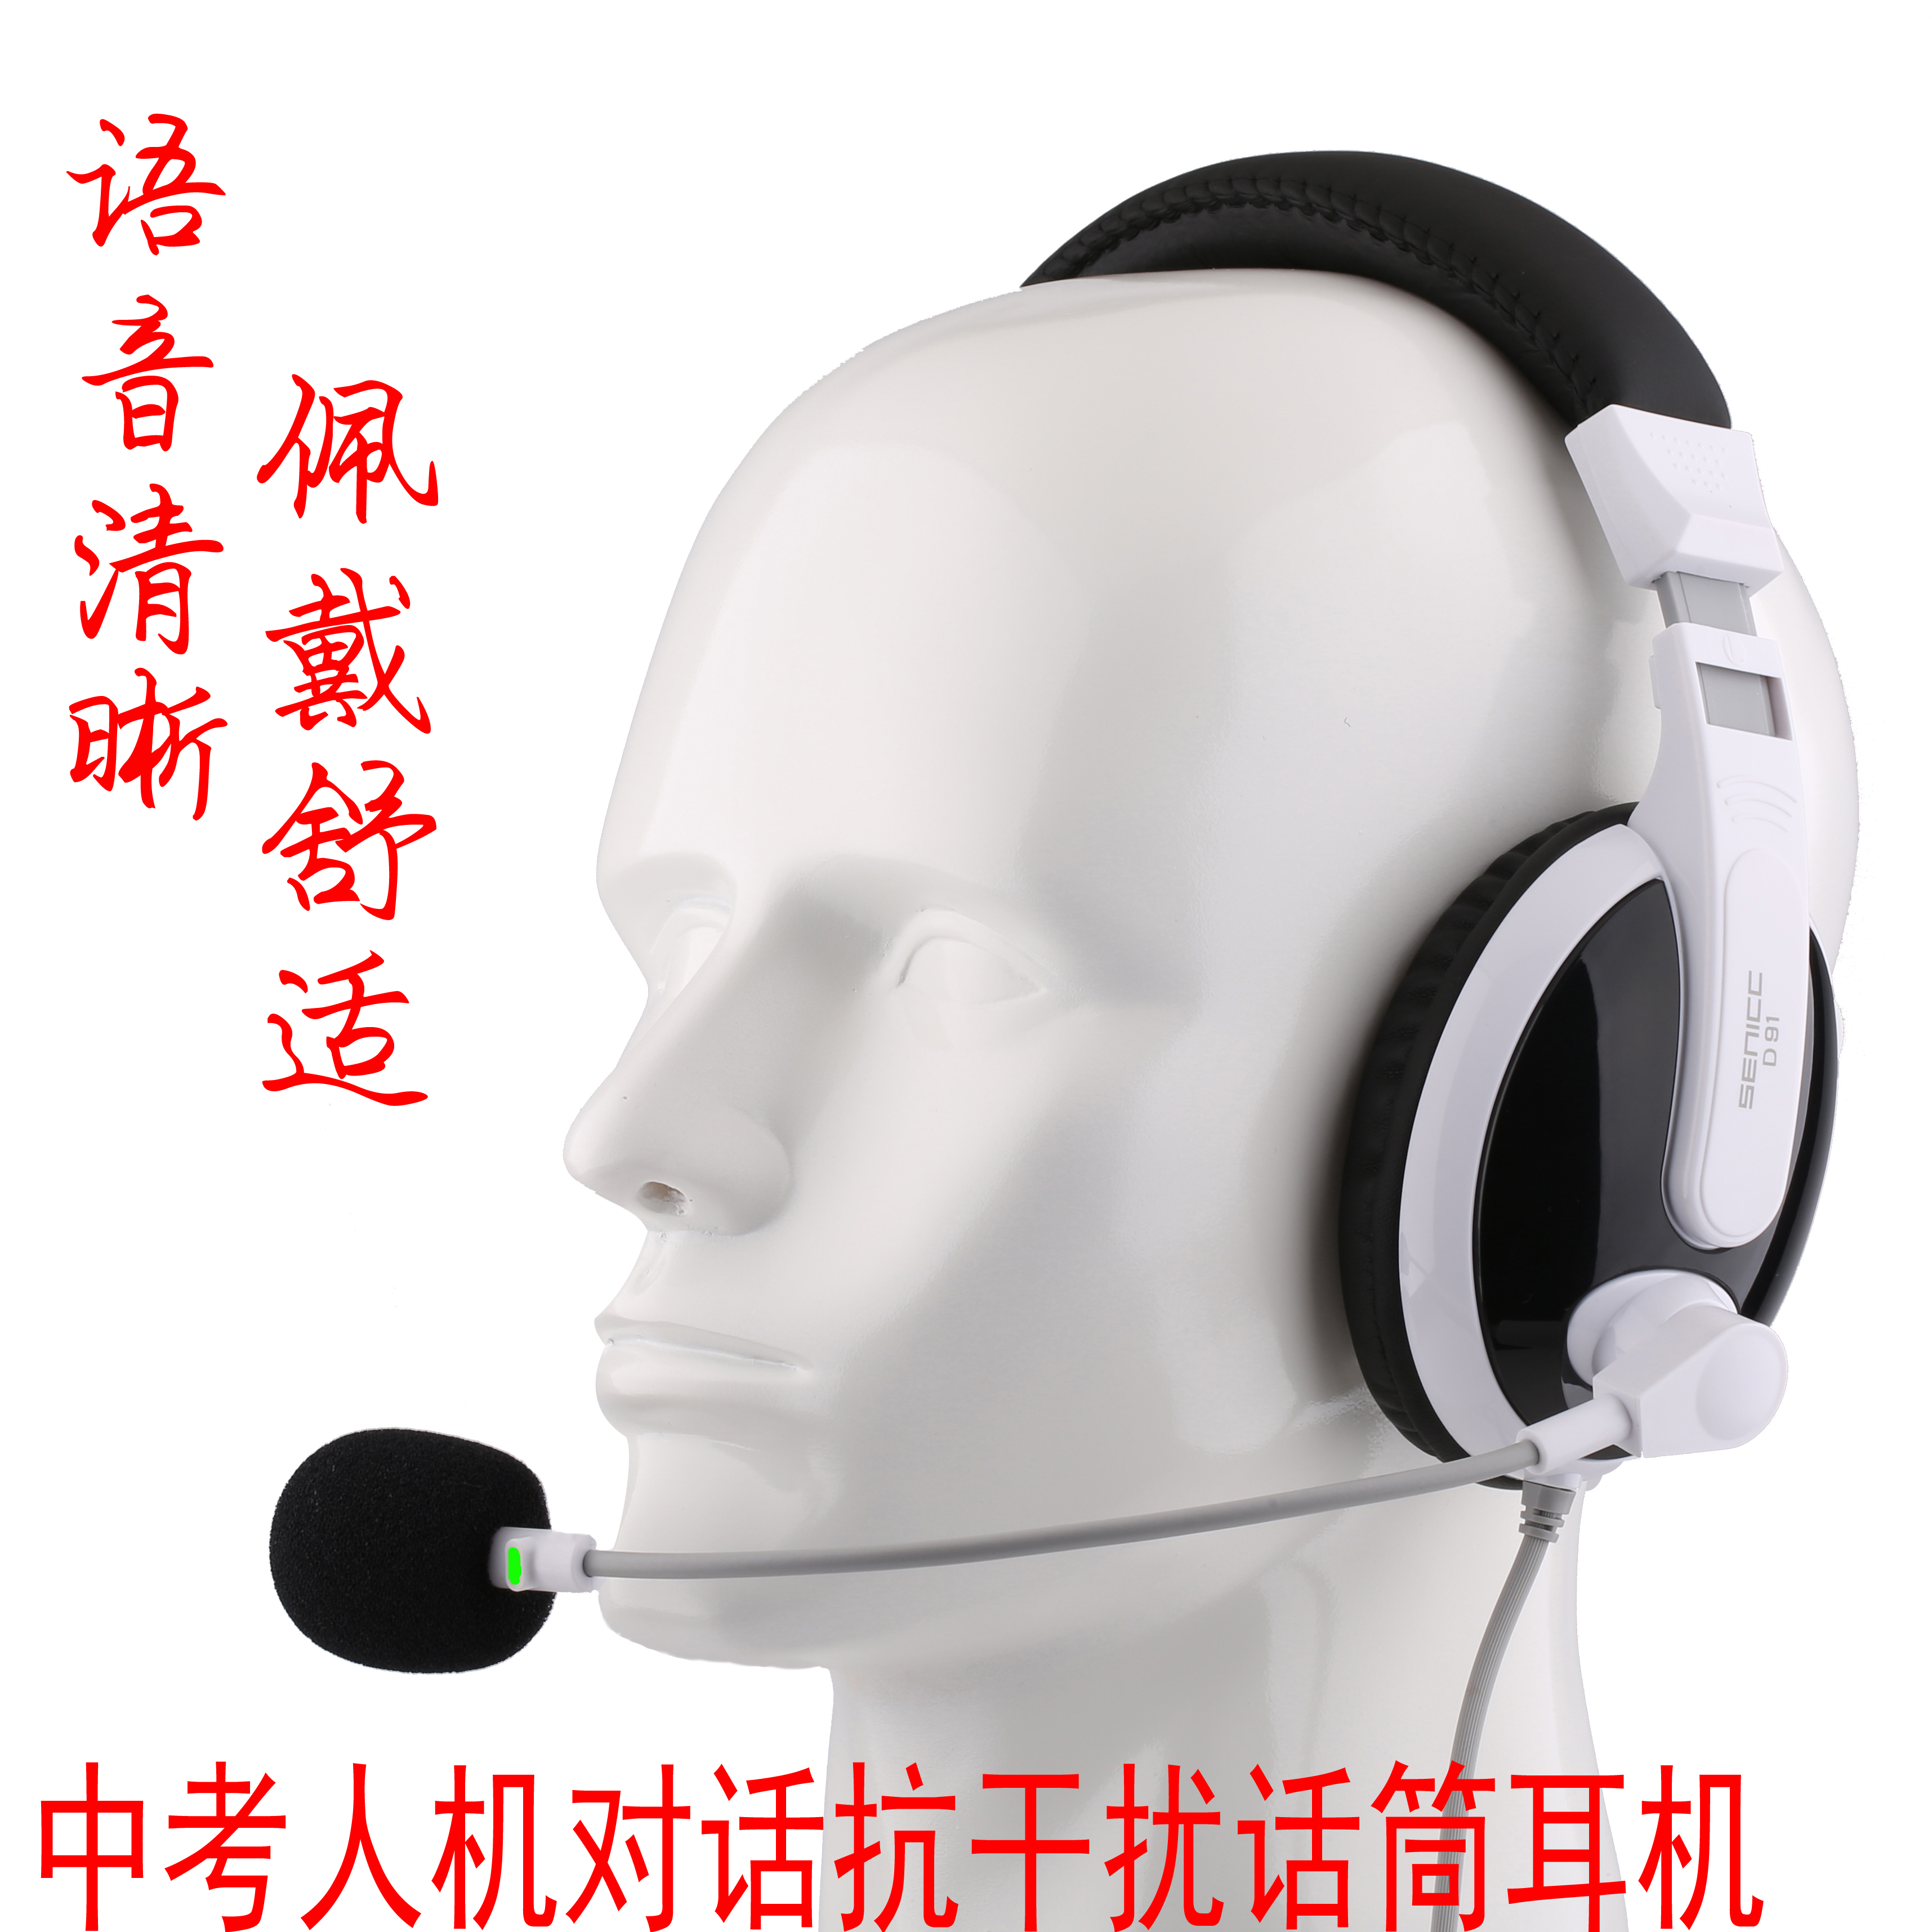 中考英语练习听力USB录音带麦耳机 高考人机对话跟读听说考试耳麦